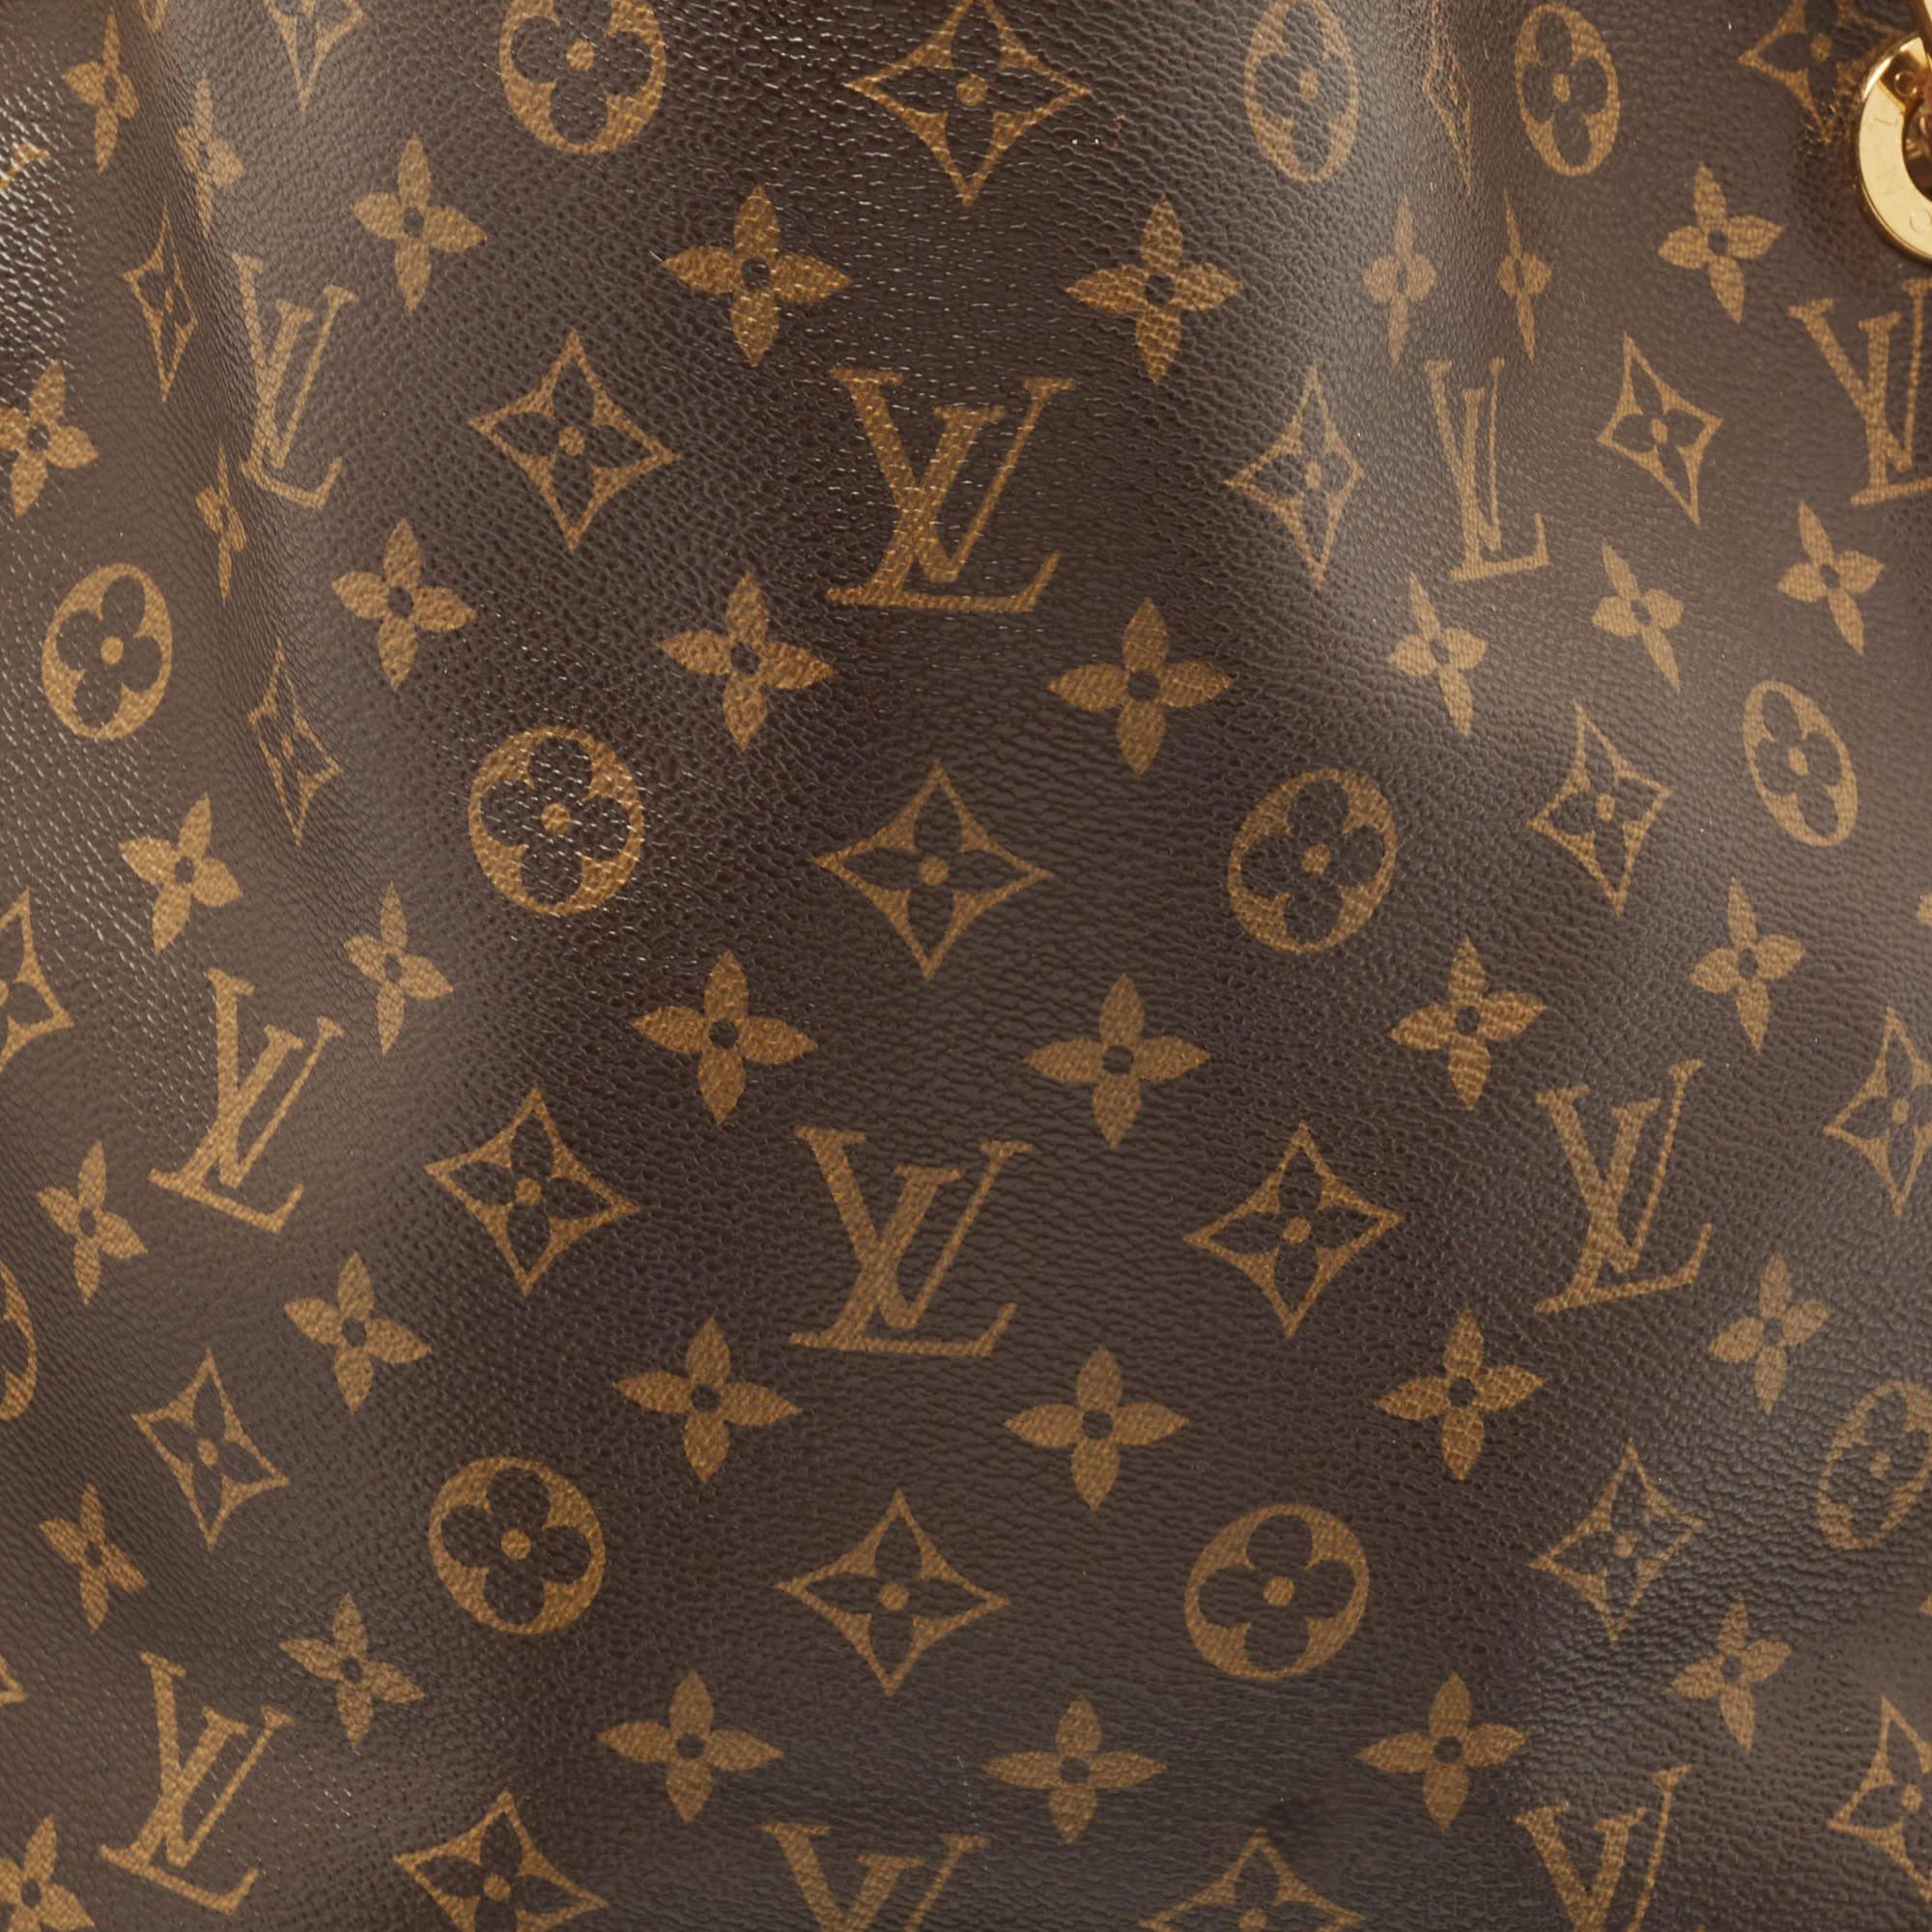 Women's Louis Vuitton Monogram Canvas Artsy MM Bag